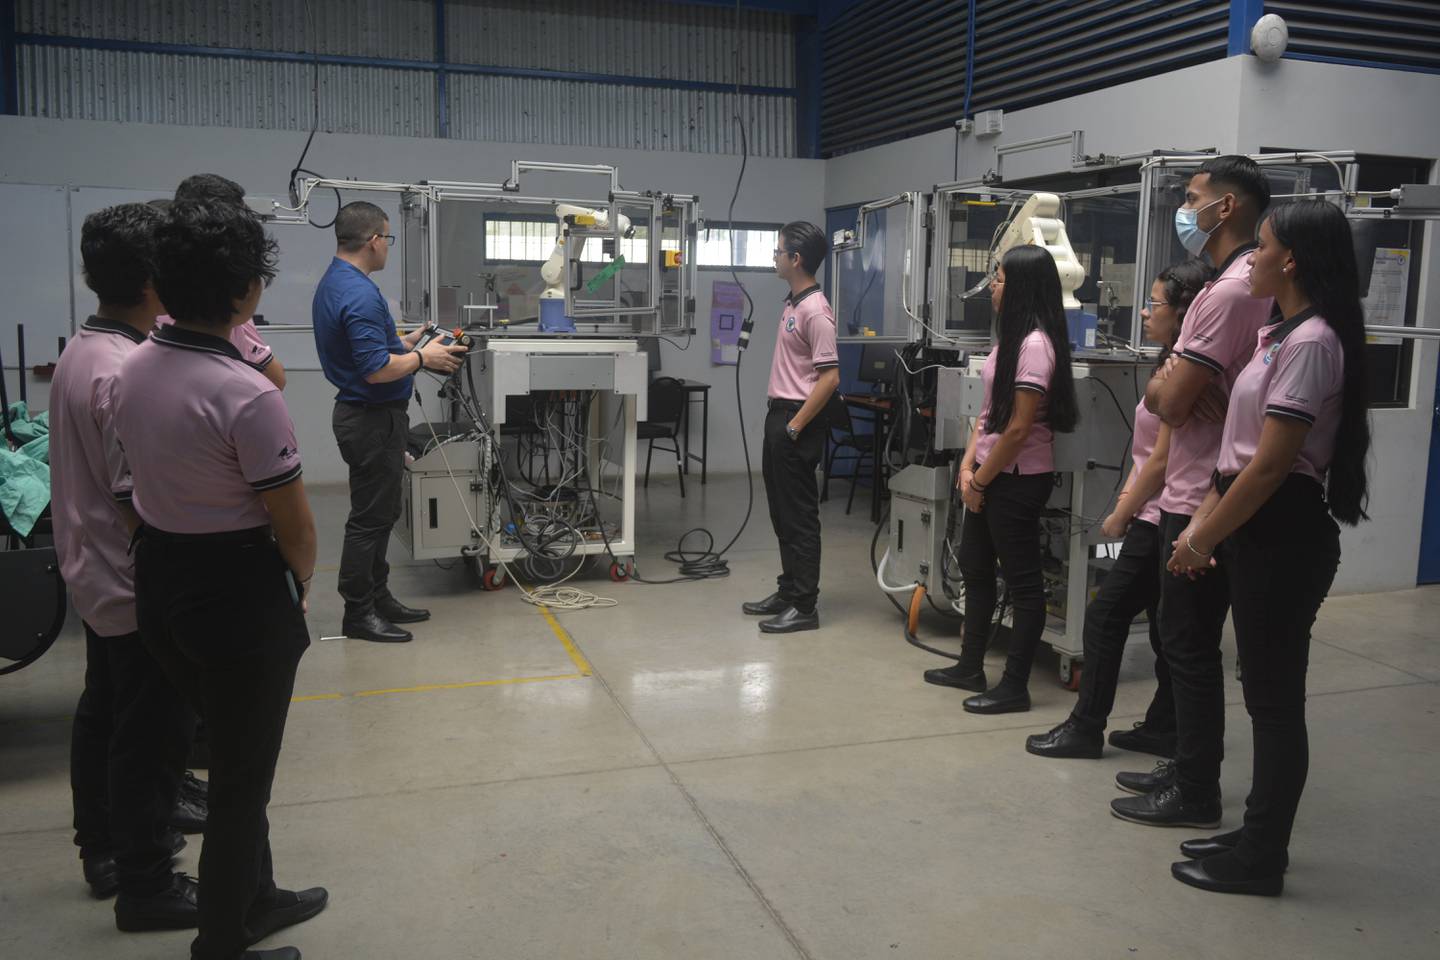 Estudiantes de colegios técnicos profesionales del país ahora podrán aprender sobre robótica y programación con tecnología utilizada por Intel Costa Rica en sus laboratorios. La donación es de 25 brazos robóticos y la capacitación necesaria para los profesores que tendrán a cargo el equipo